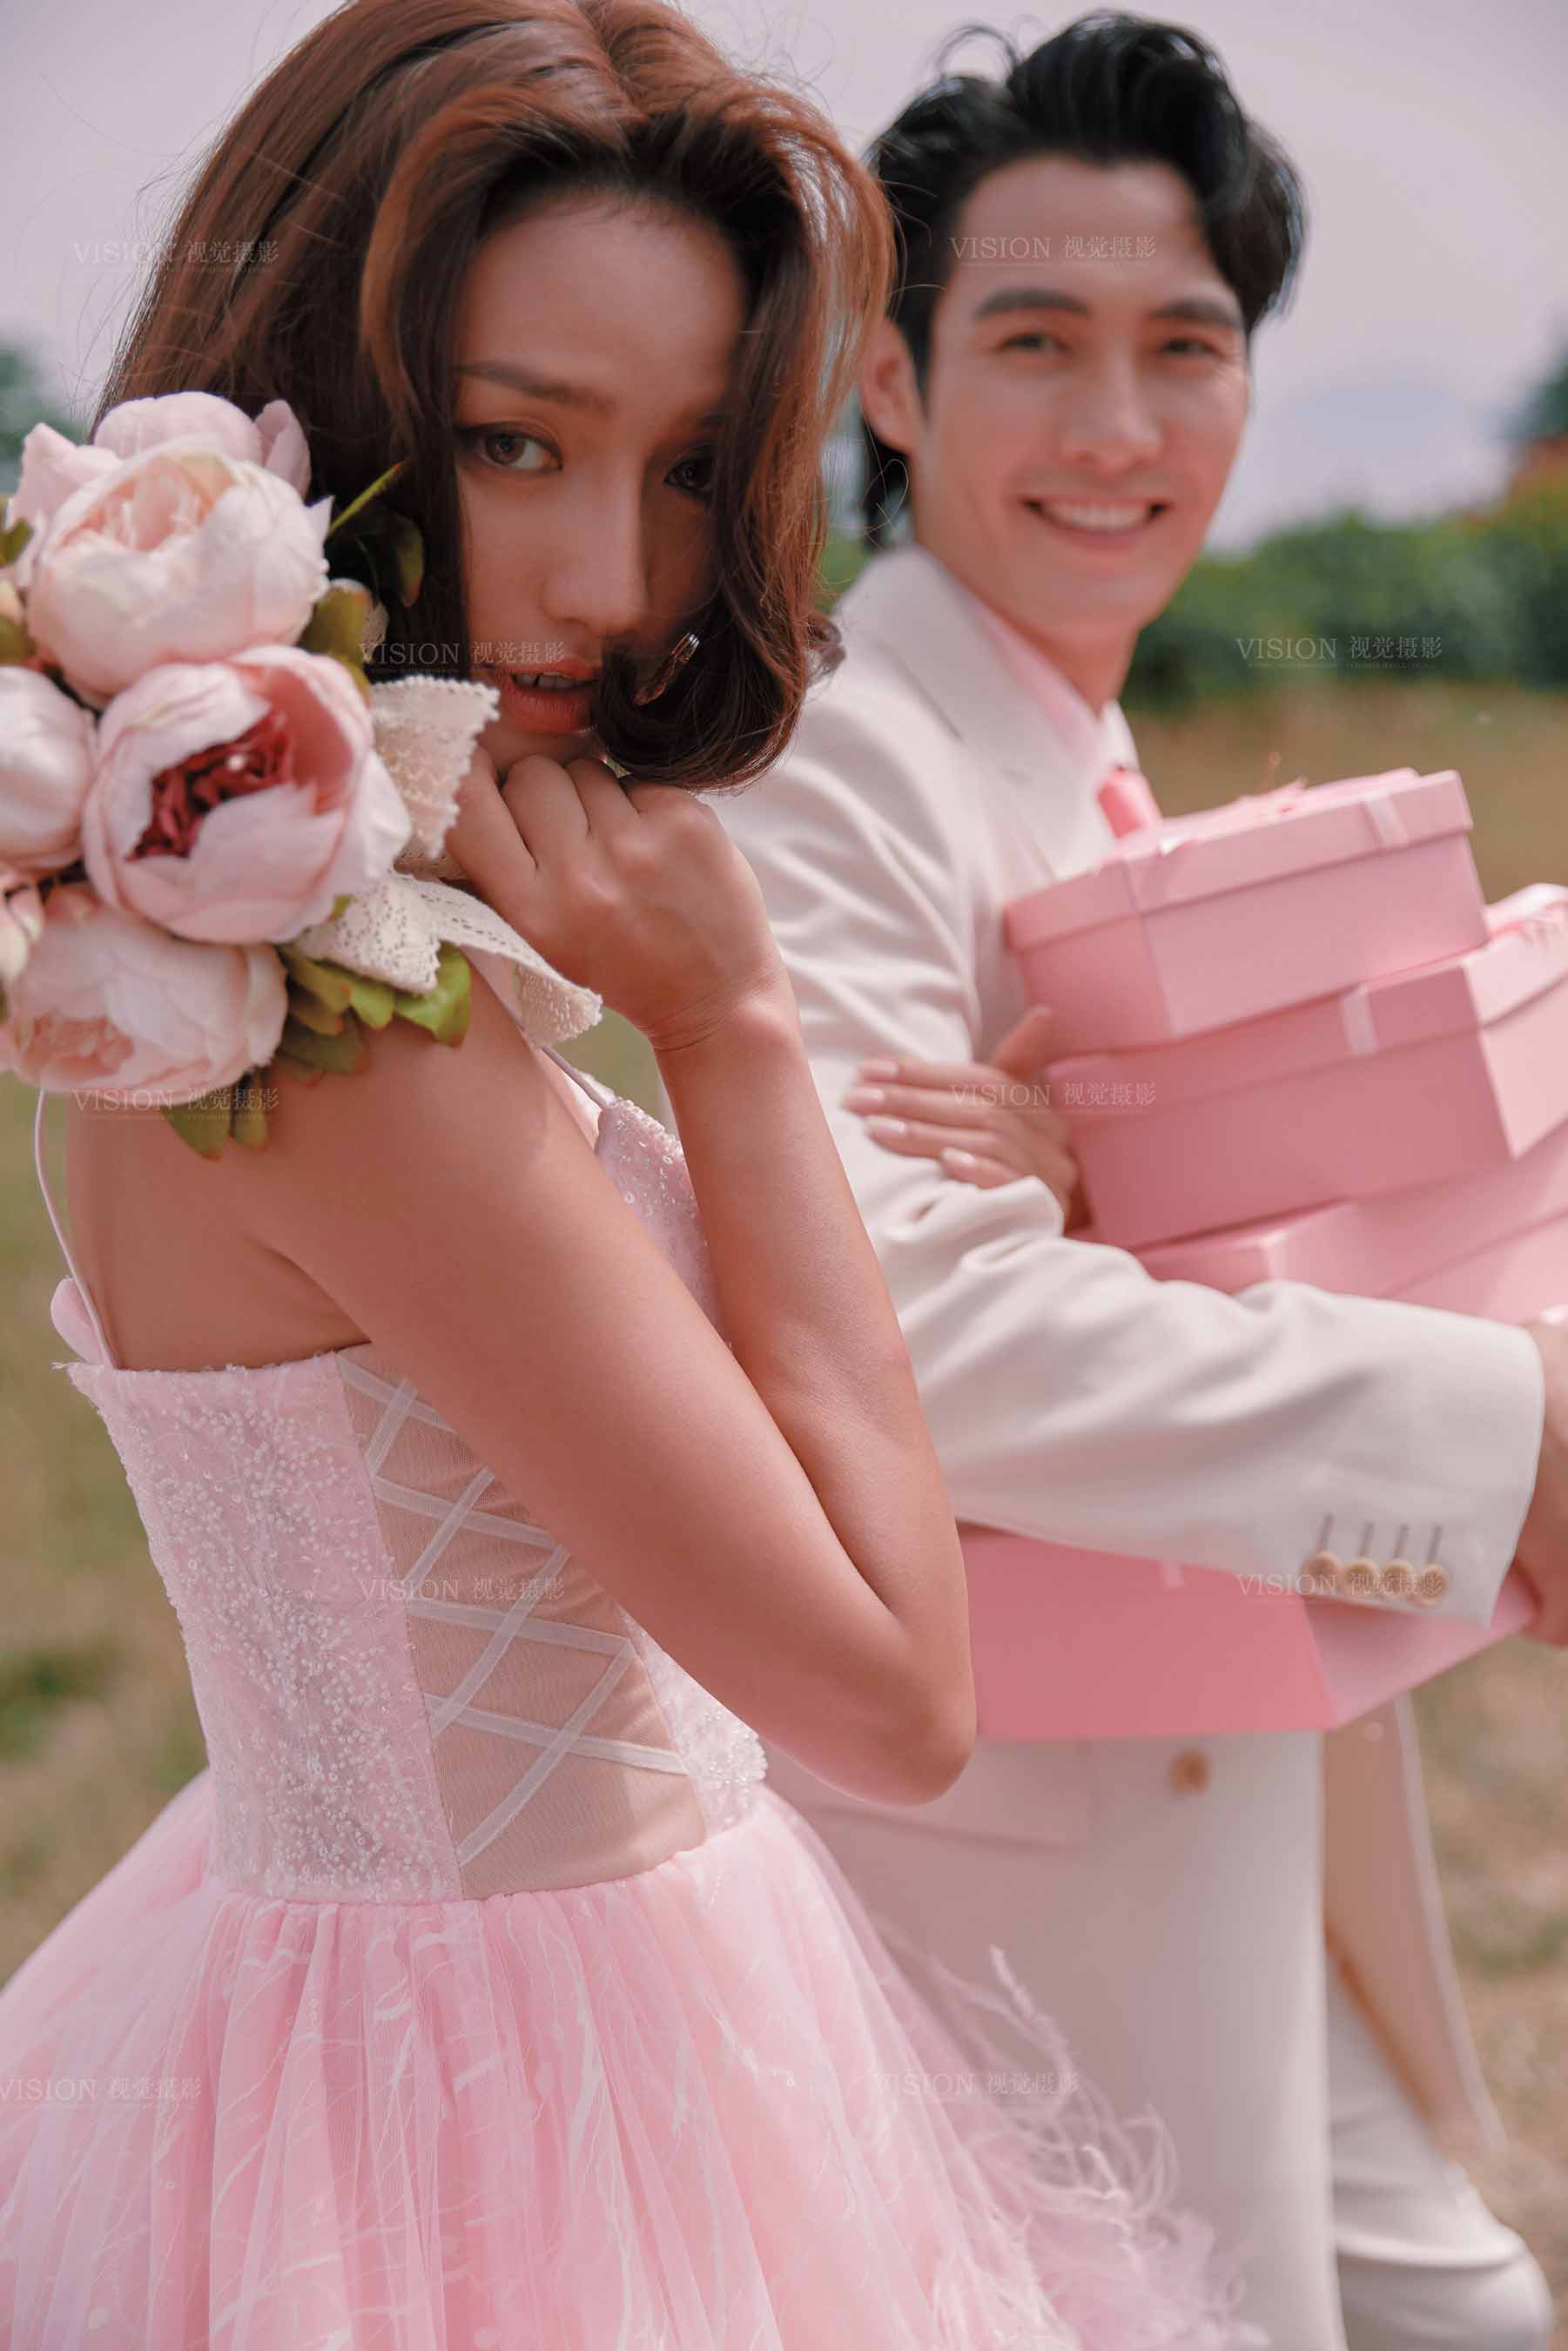 【视觉摄影】粉色系婚纱照